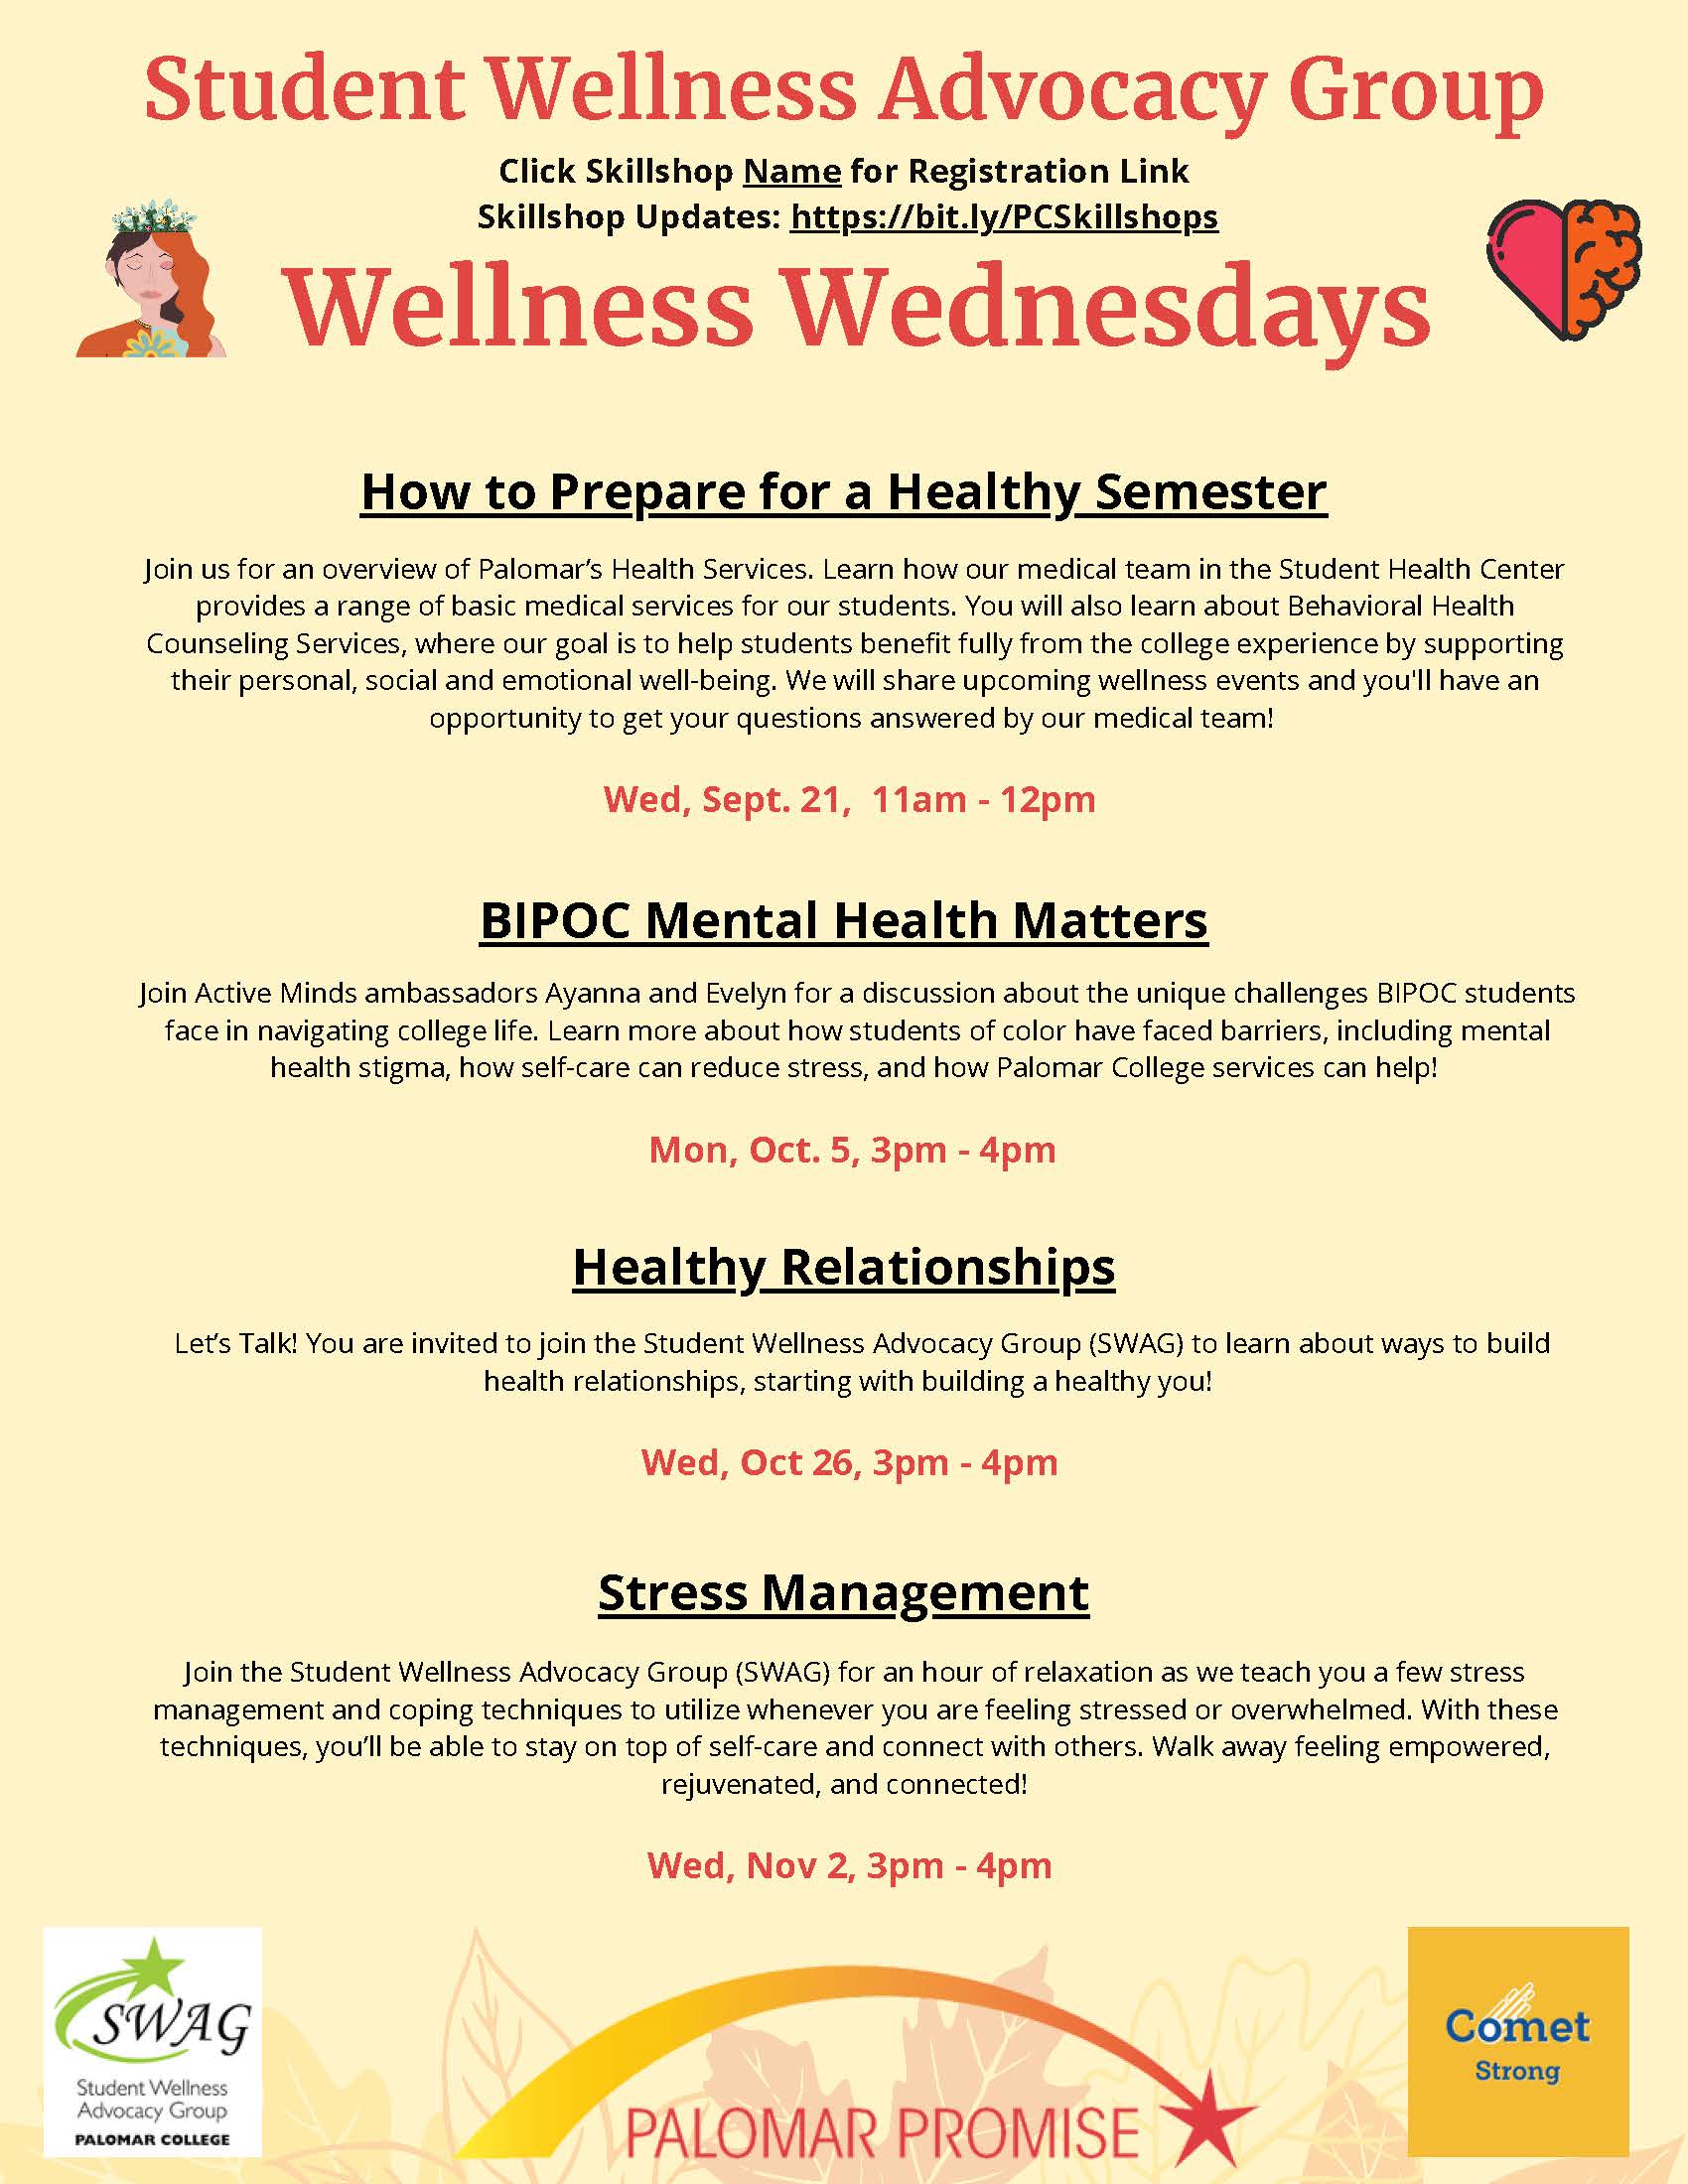 skillshop: Wellness Wednesdays